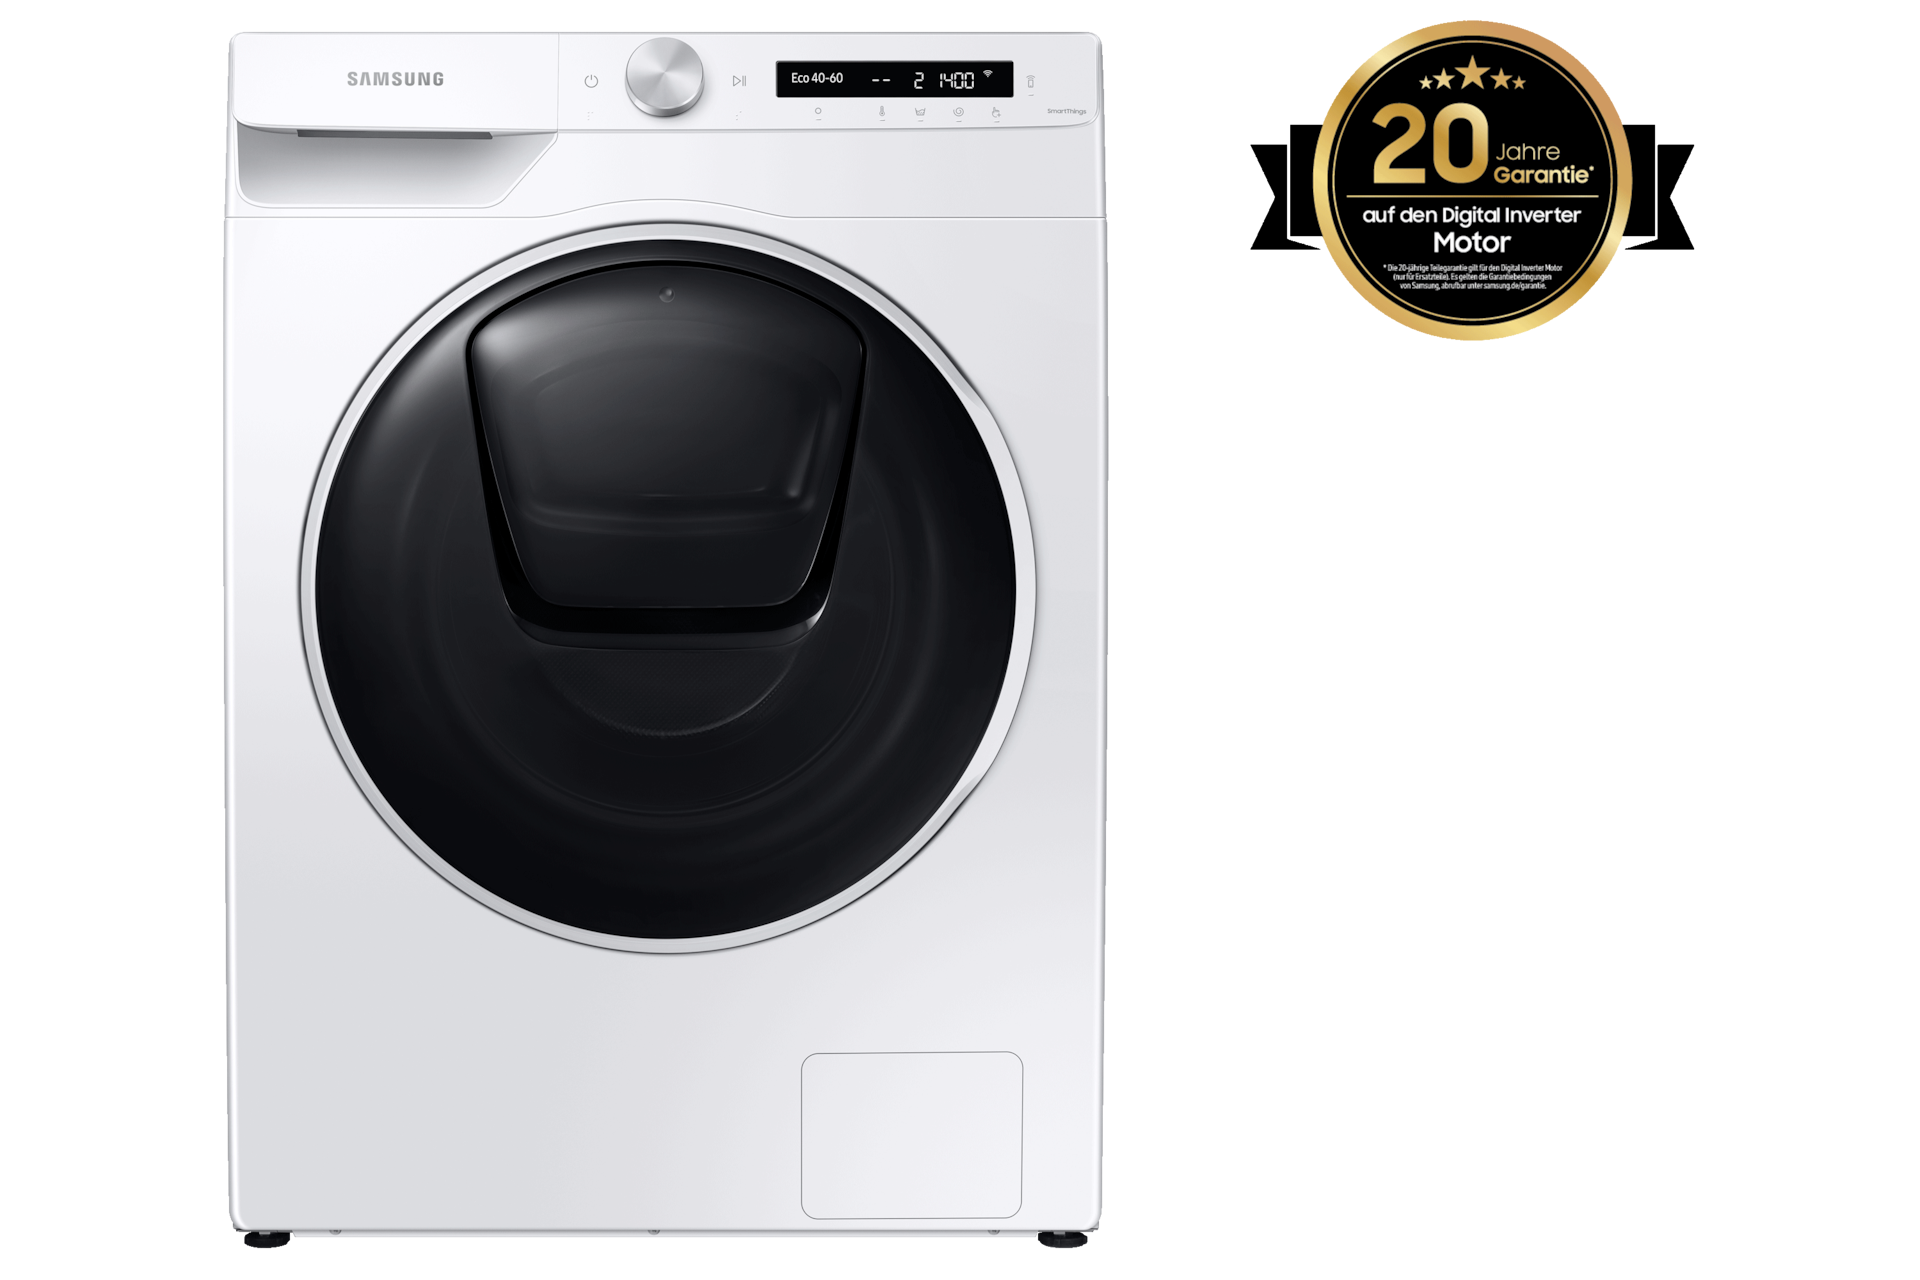 Samsung WD5500T, Waschtrockner, SchaumAktiv & AddWash™, 10,5 / 6 kg, EEK Waschzyklus*: A, 10.5 kg Weiß